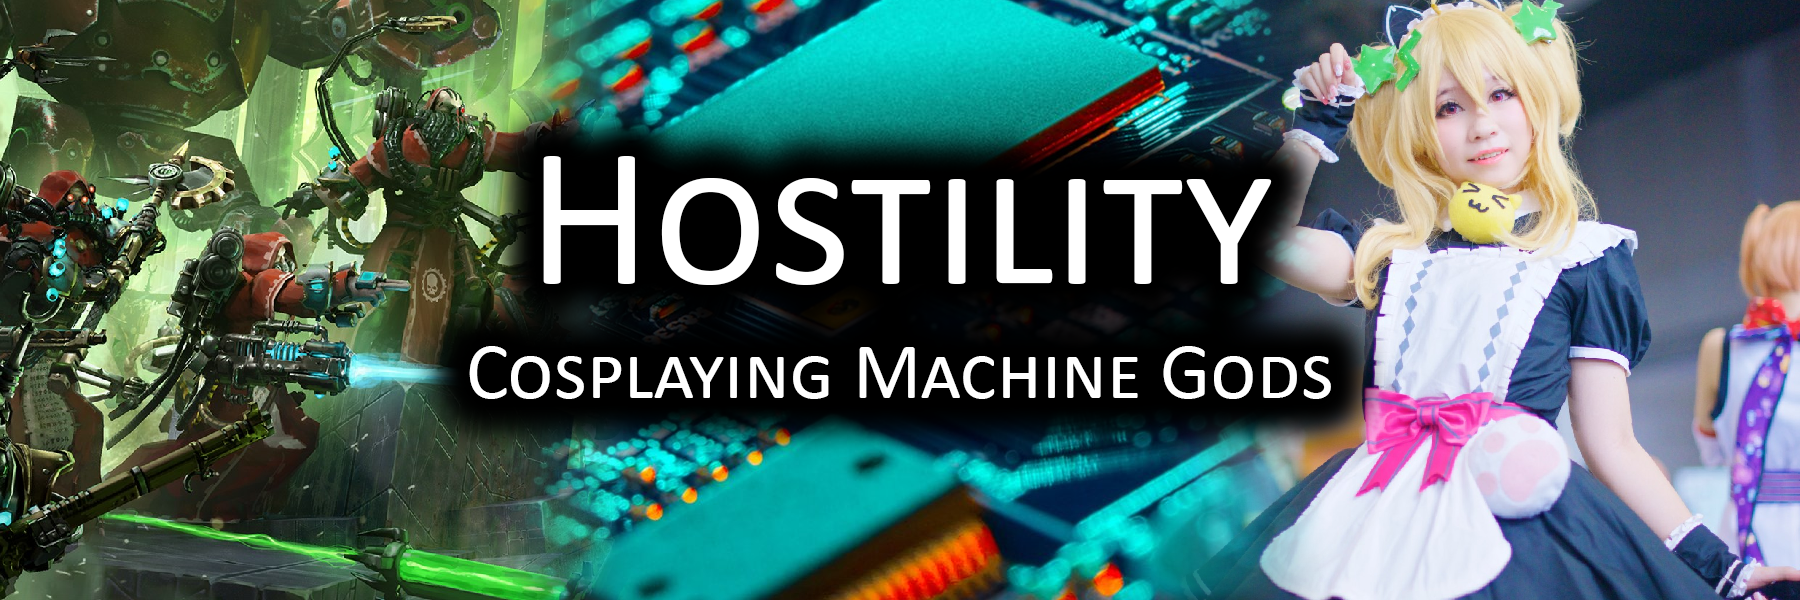 Hostility: Cosplaying Machine Gods